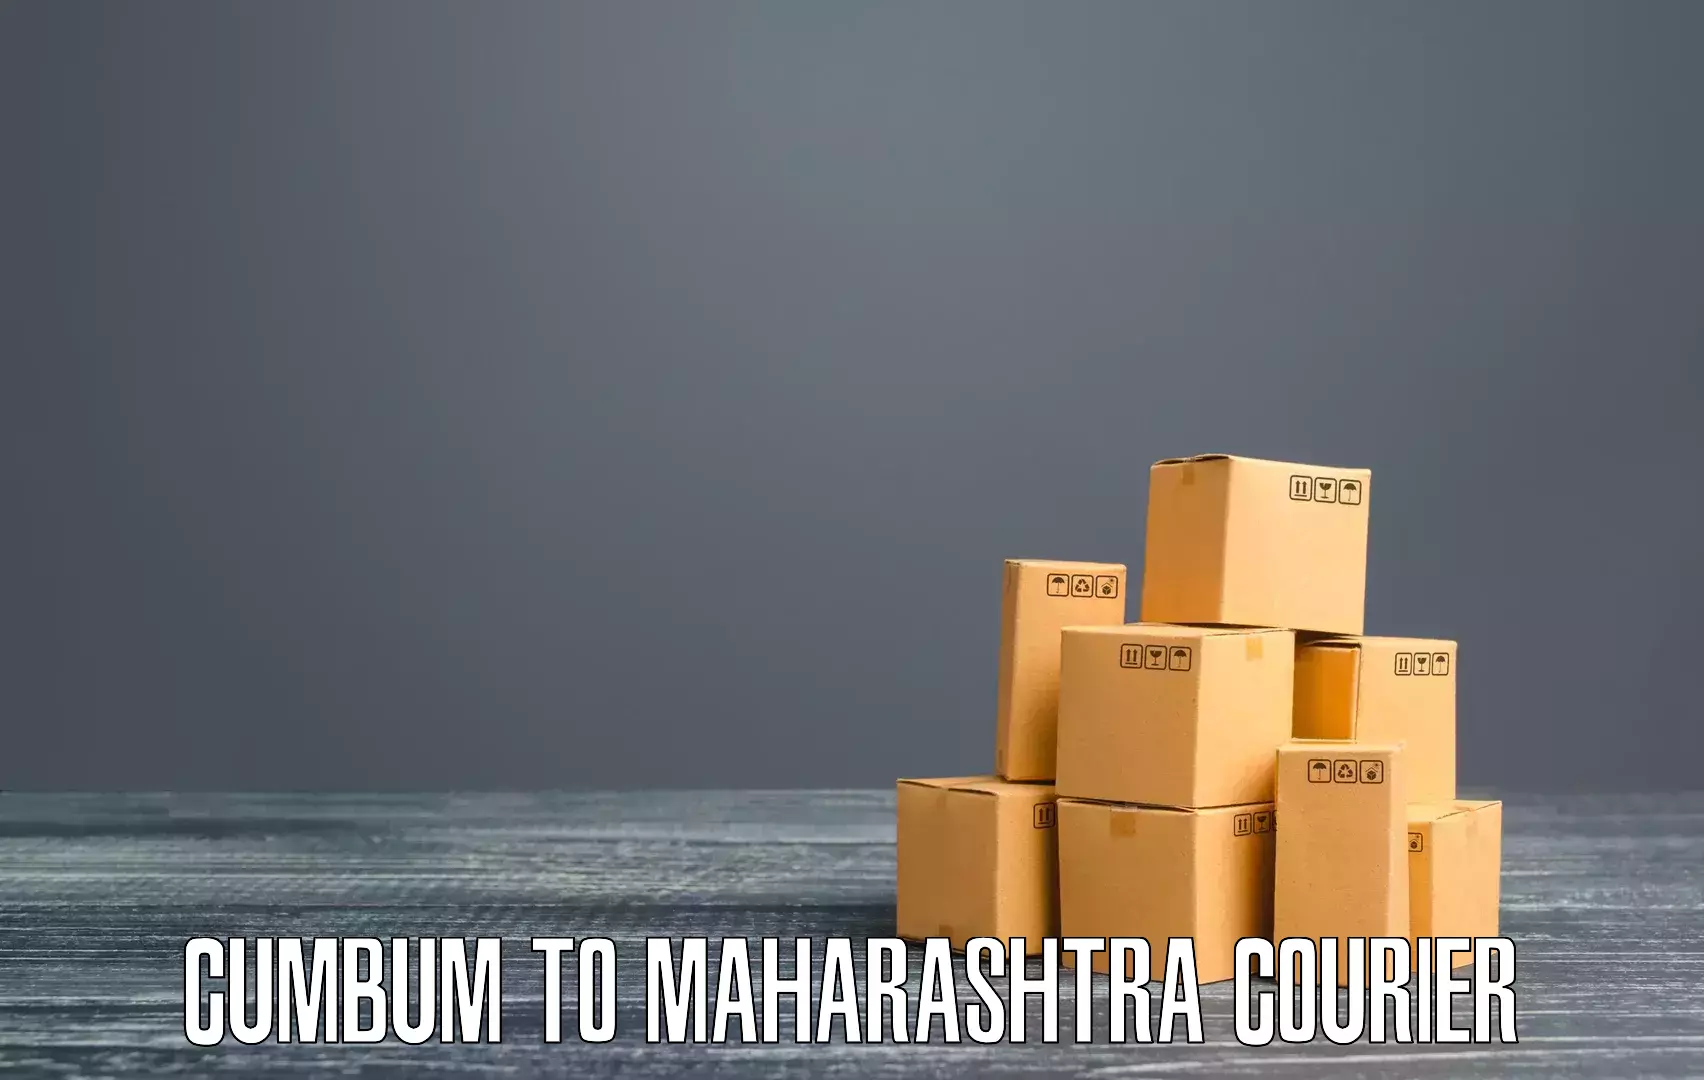 Courier service comparison Cumbum to Mehkar